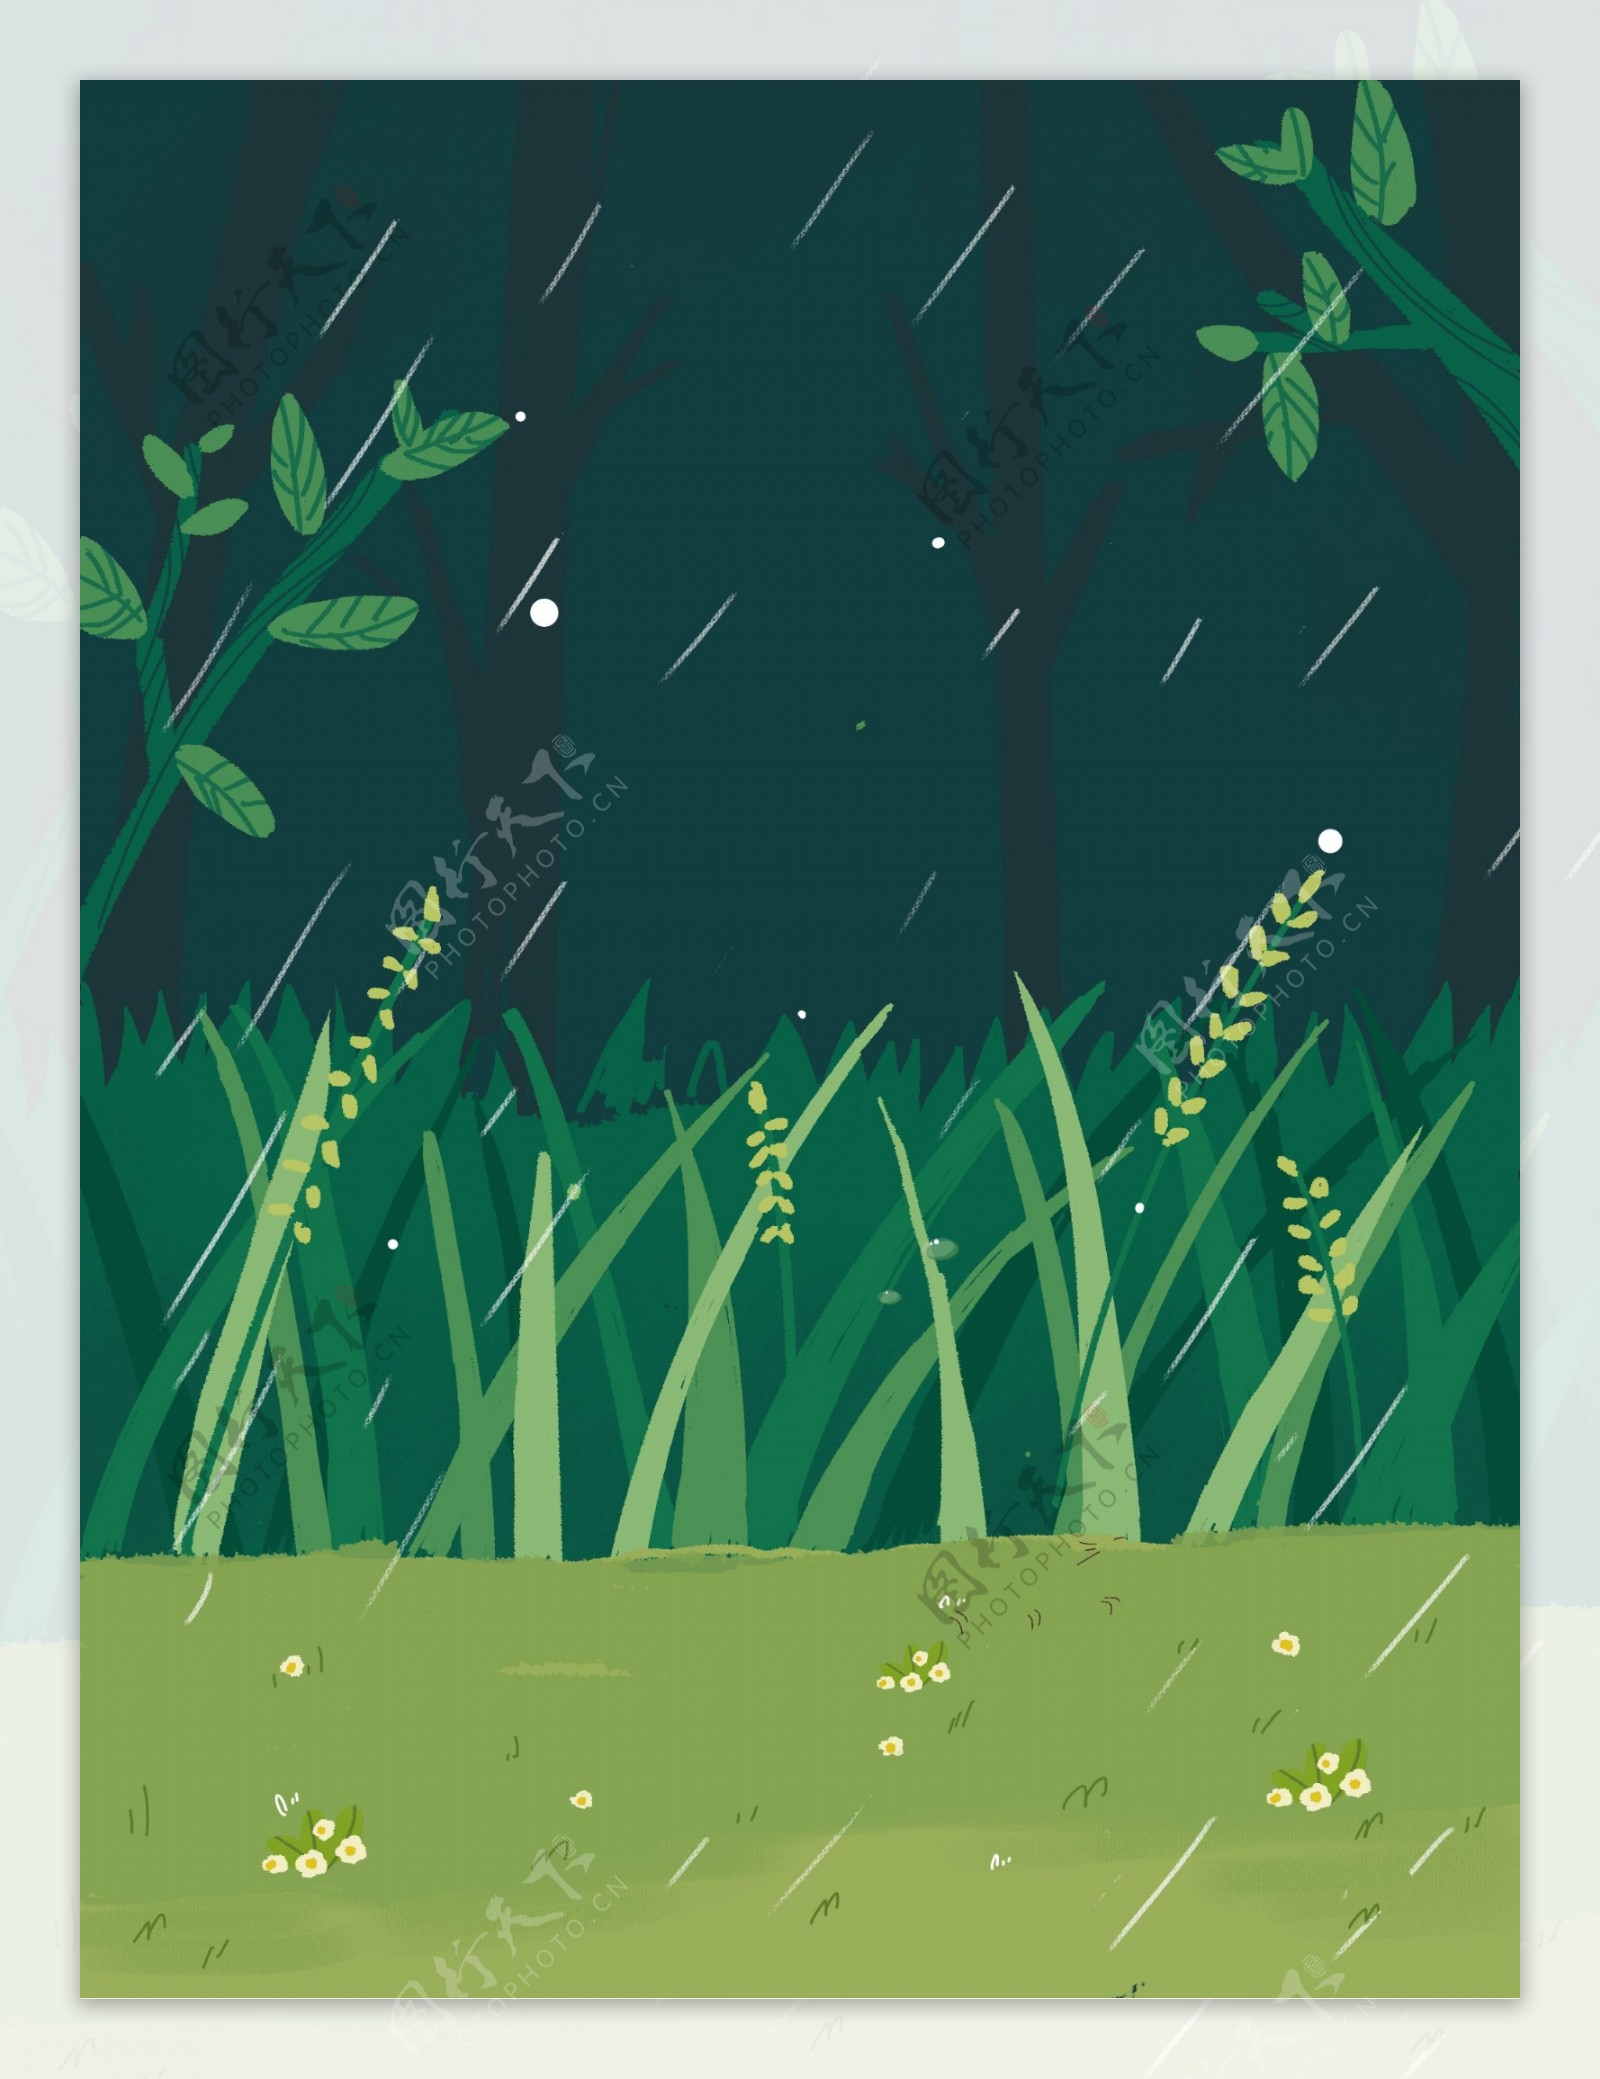 谷雨节气下雨草丛背景设计